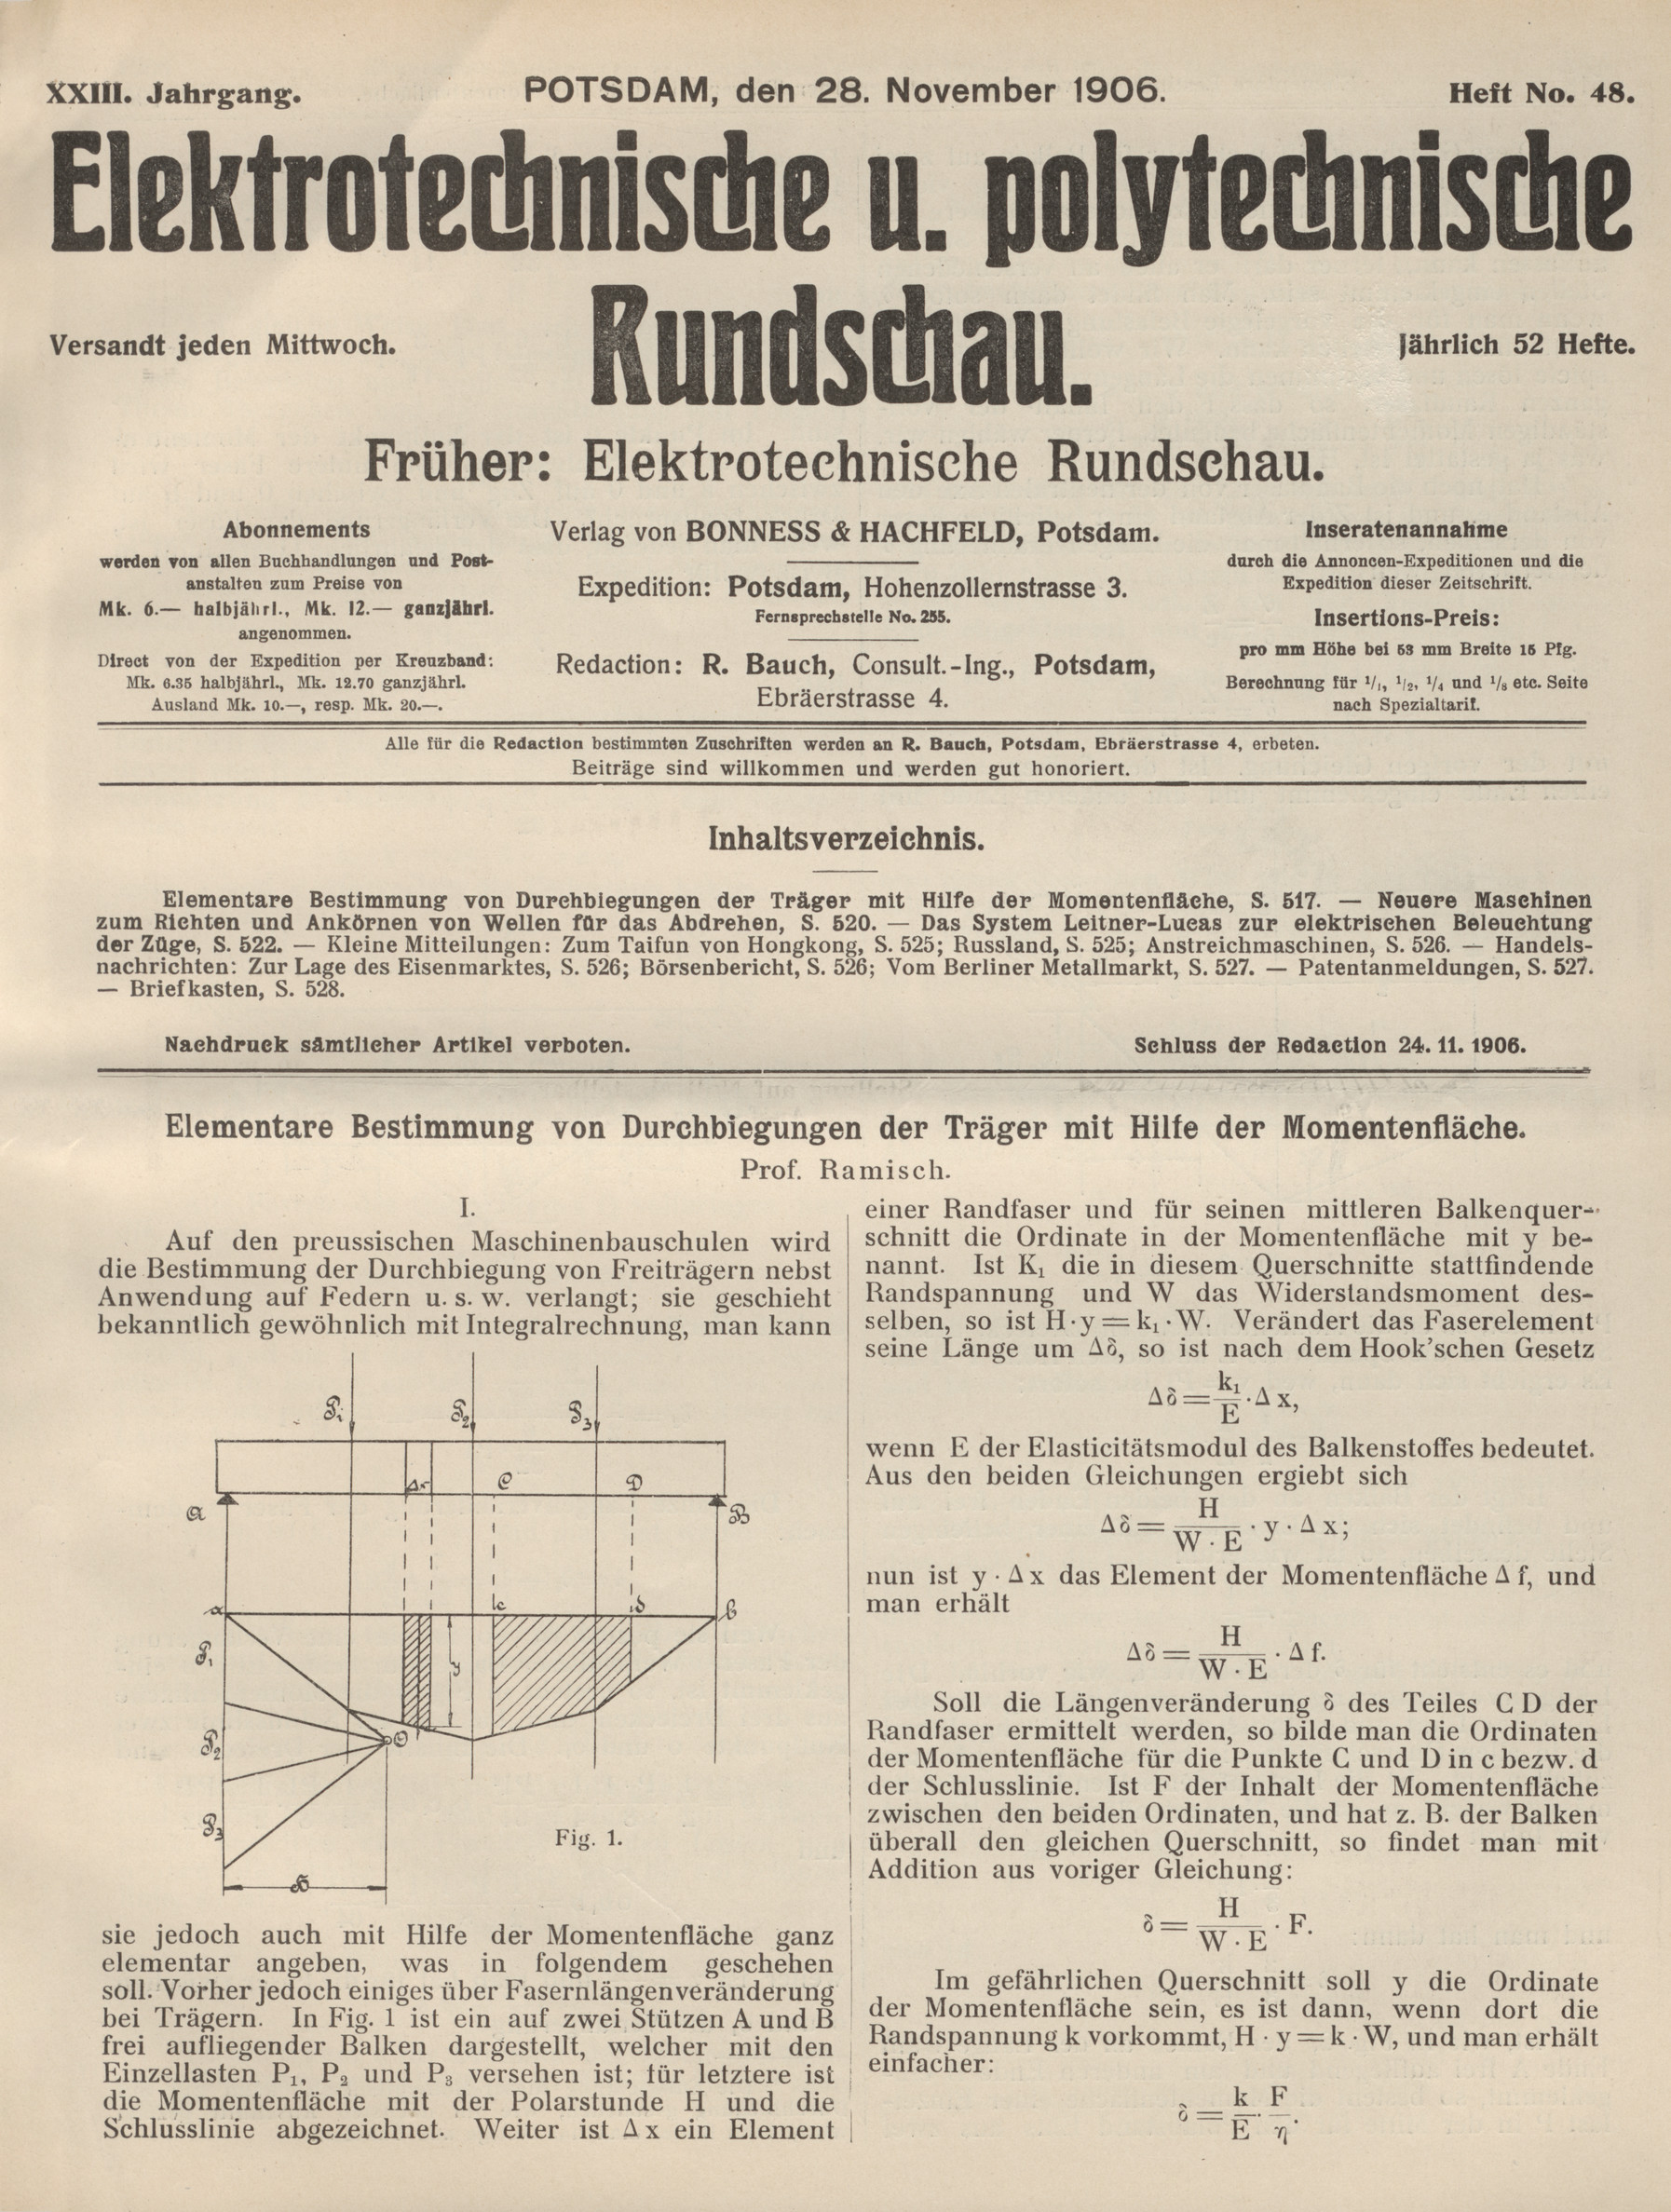 Elektrotechnische und polytechnische Rundschau, XXIII. Jahrgang, Heft No. 48